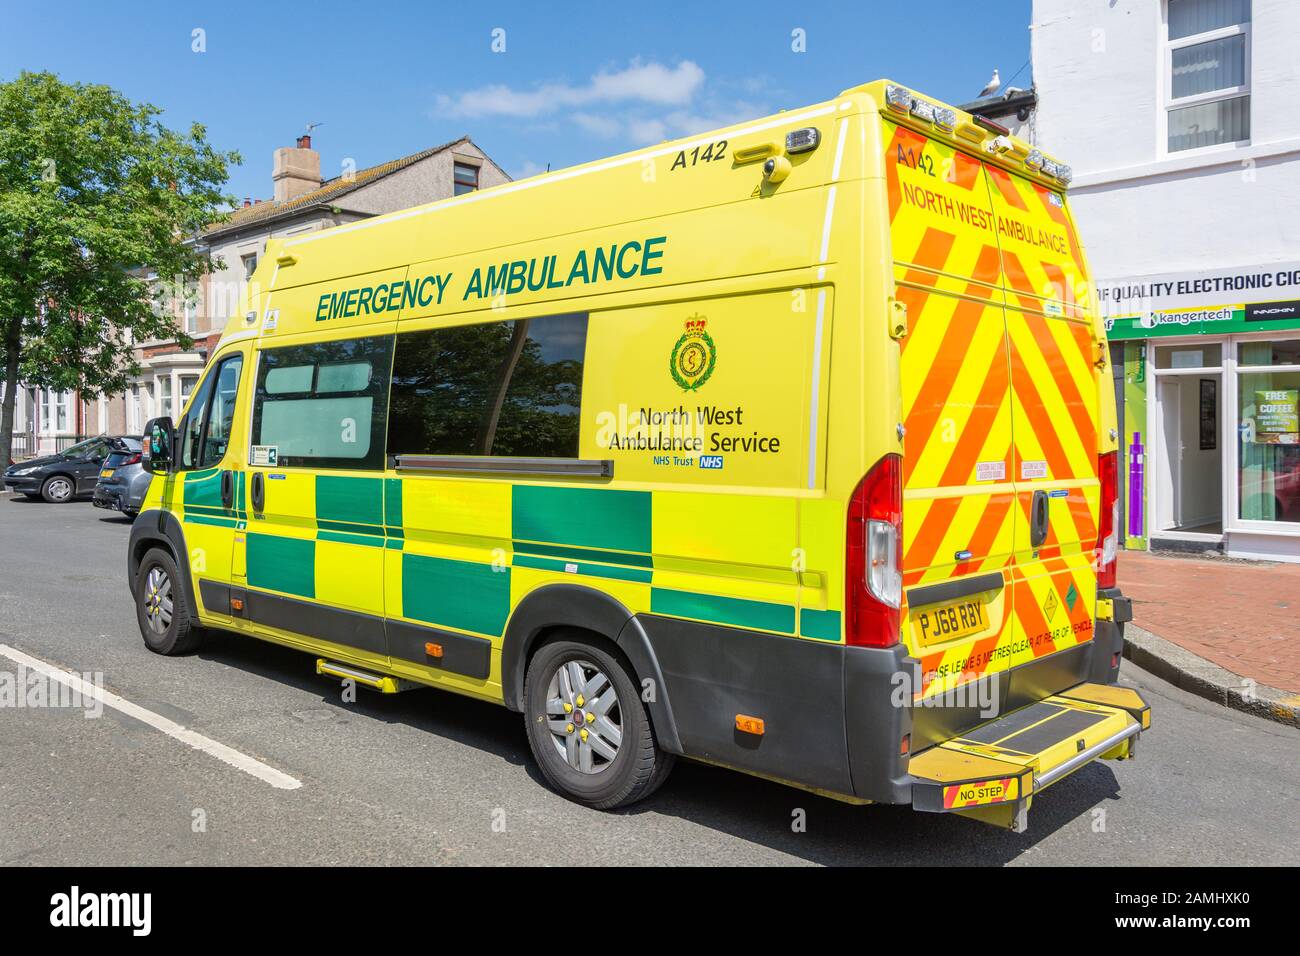 Service d'ambulance du Nord-Ouest Ambulance d'urgence sur appel, Fleetwood, Lancashire, Angleterre, Royaume-Uni Banque D'Images